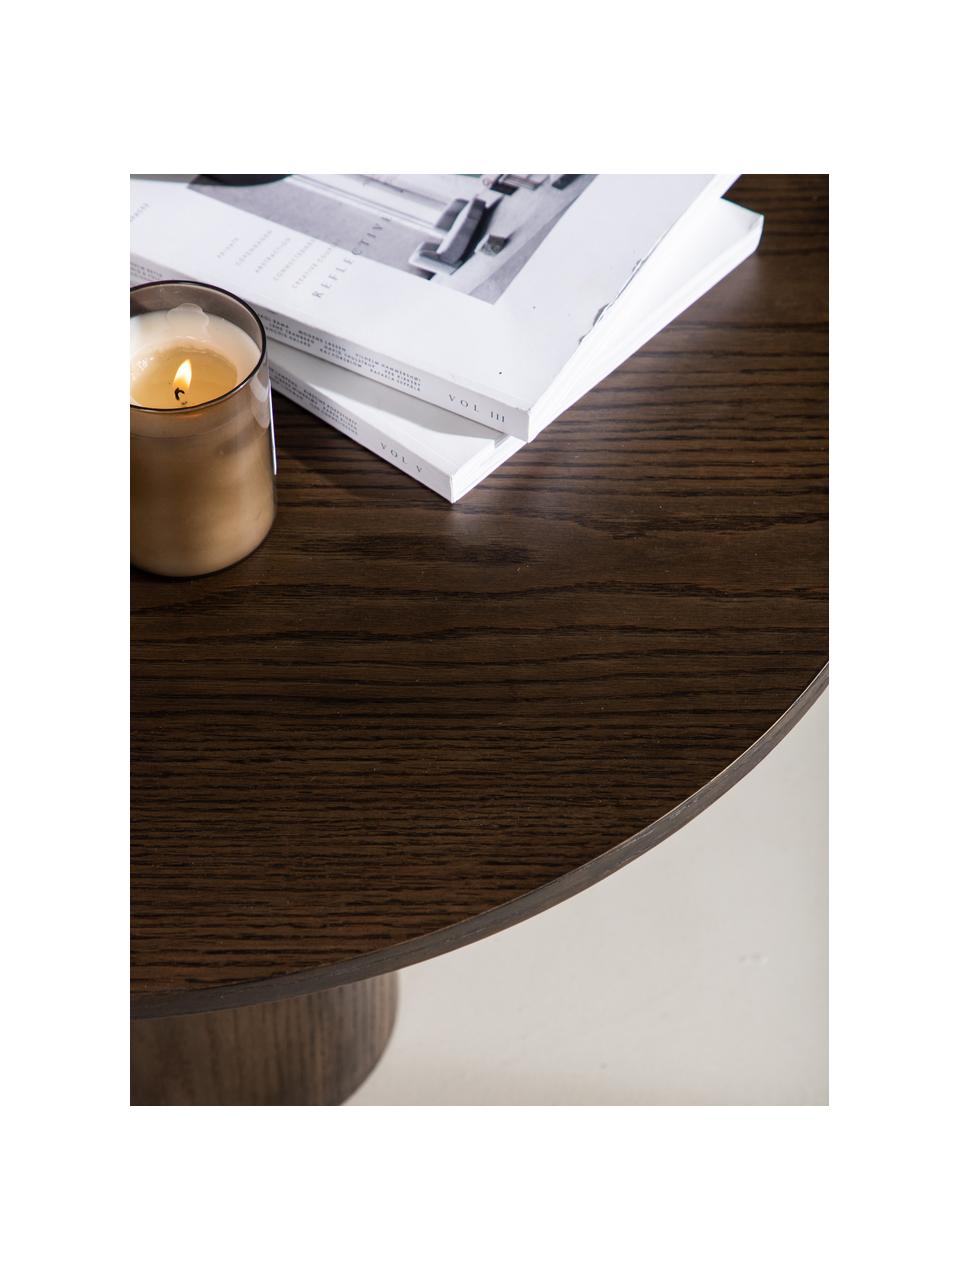 Okrúhly drevený konferenčný stolík Olivia, Drevovláknitá doska strednej hustoty (MDF) s dyhou z dubového dreva, Drevo, tmavý lak, Ø 80 cm